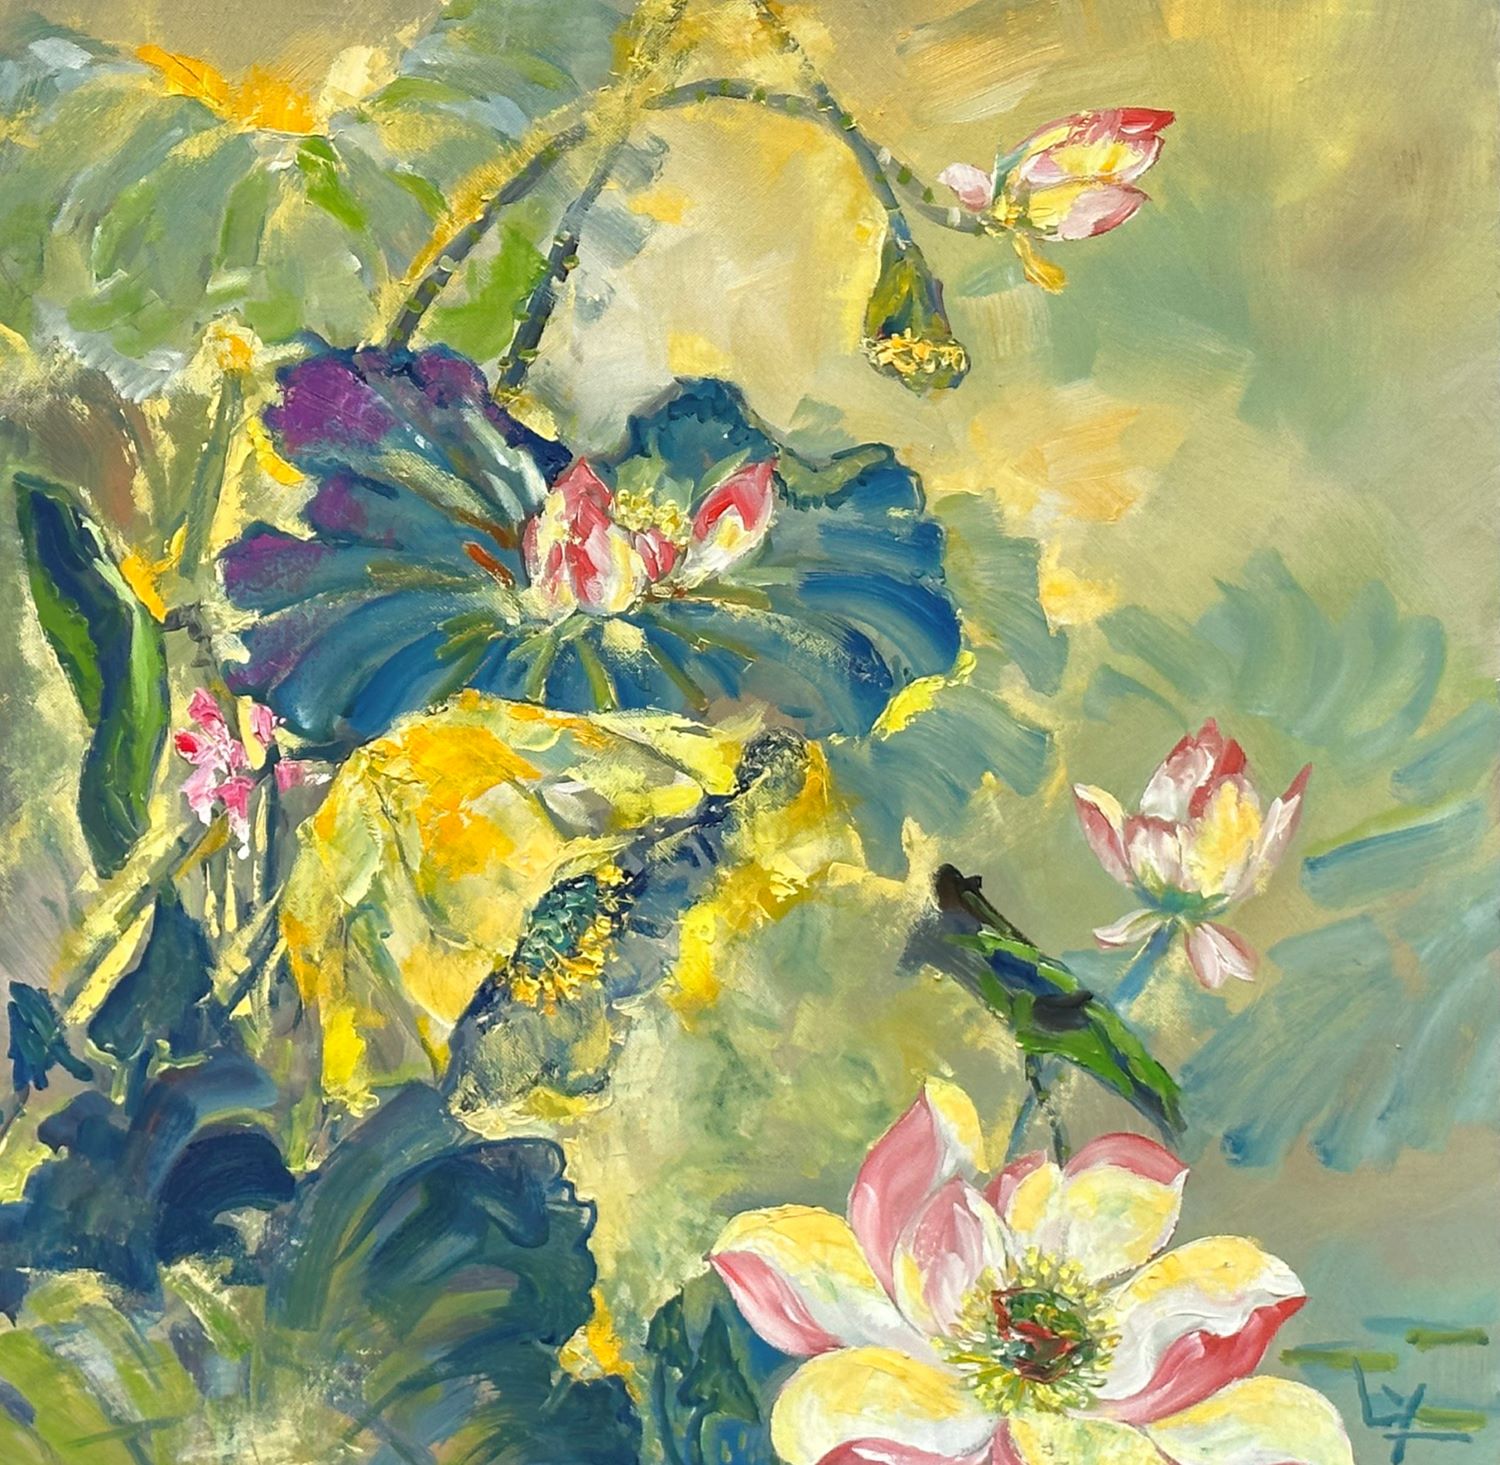 Lotus II - Vietnamese Oil Painting by Artist Le Ngoc Ly